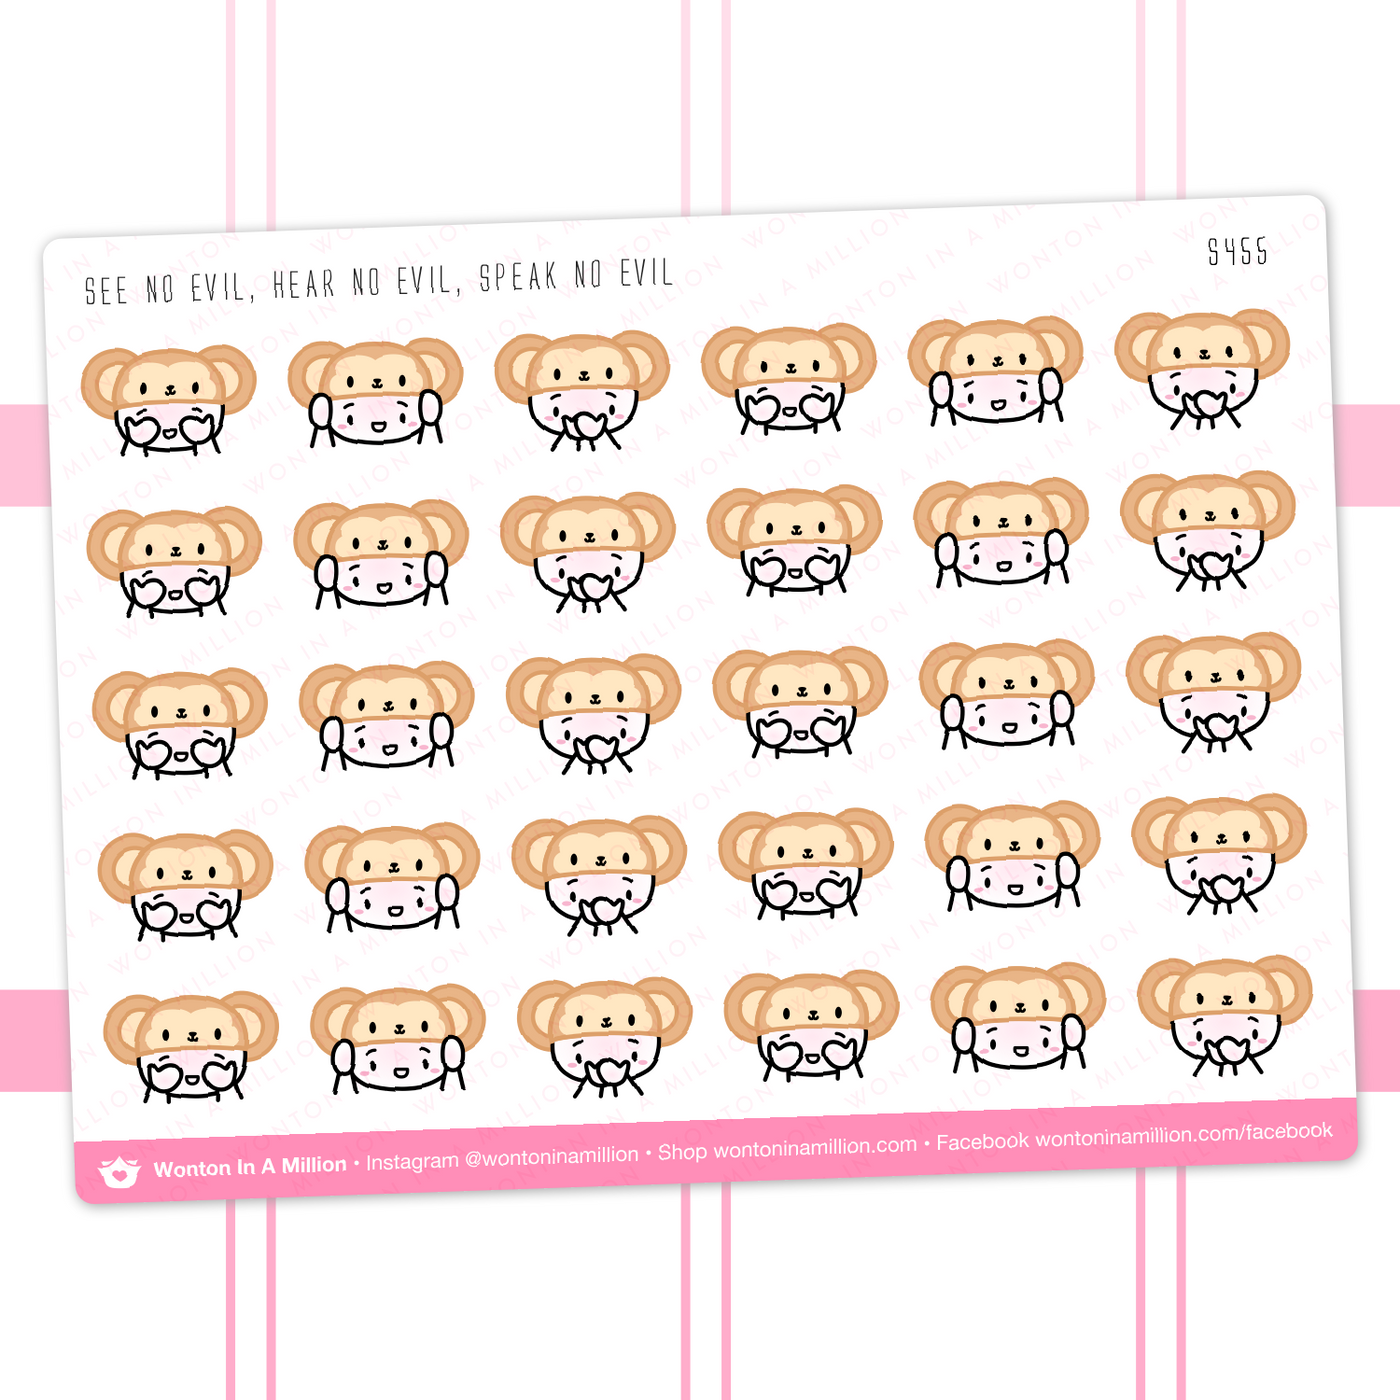 S455 | Monkey Emojis Stickers